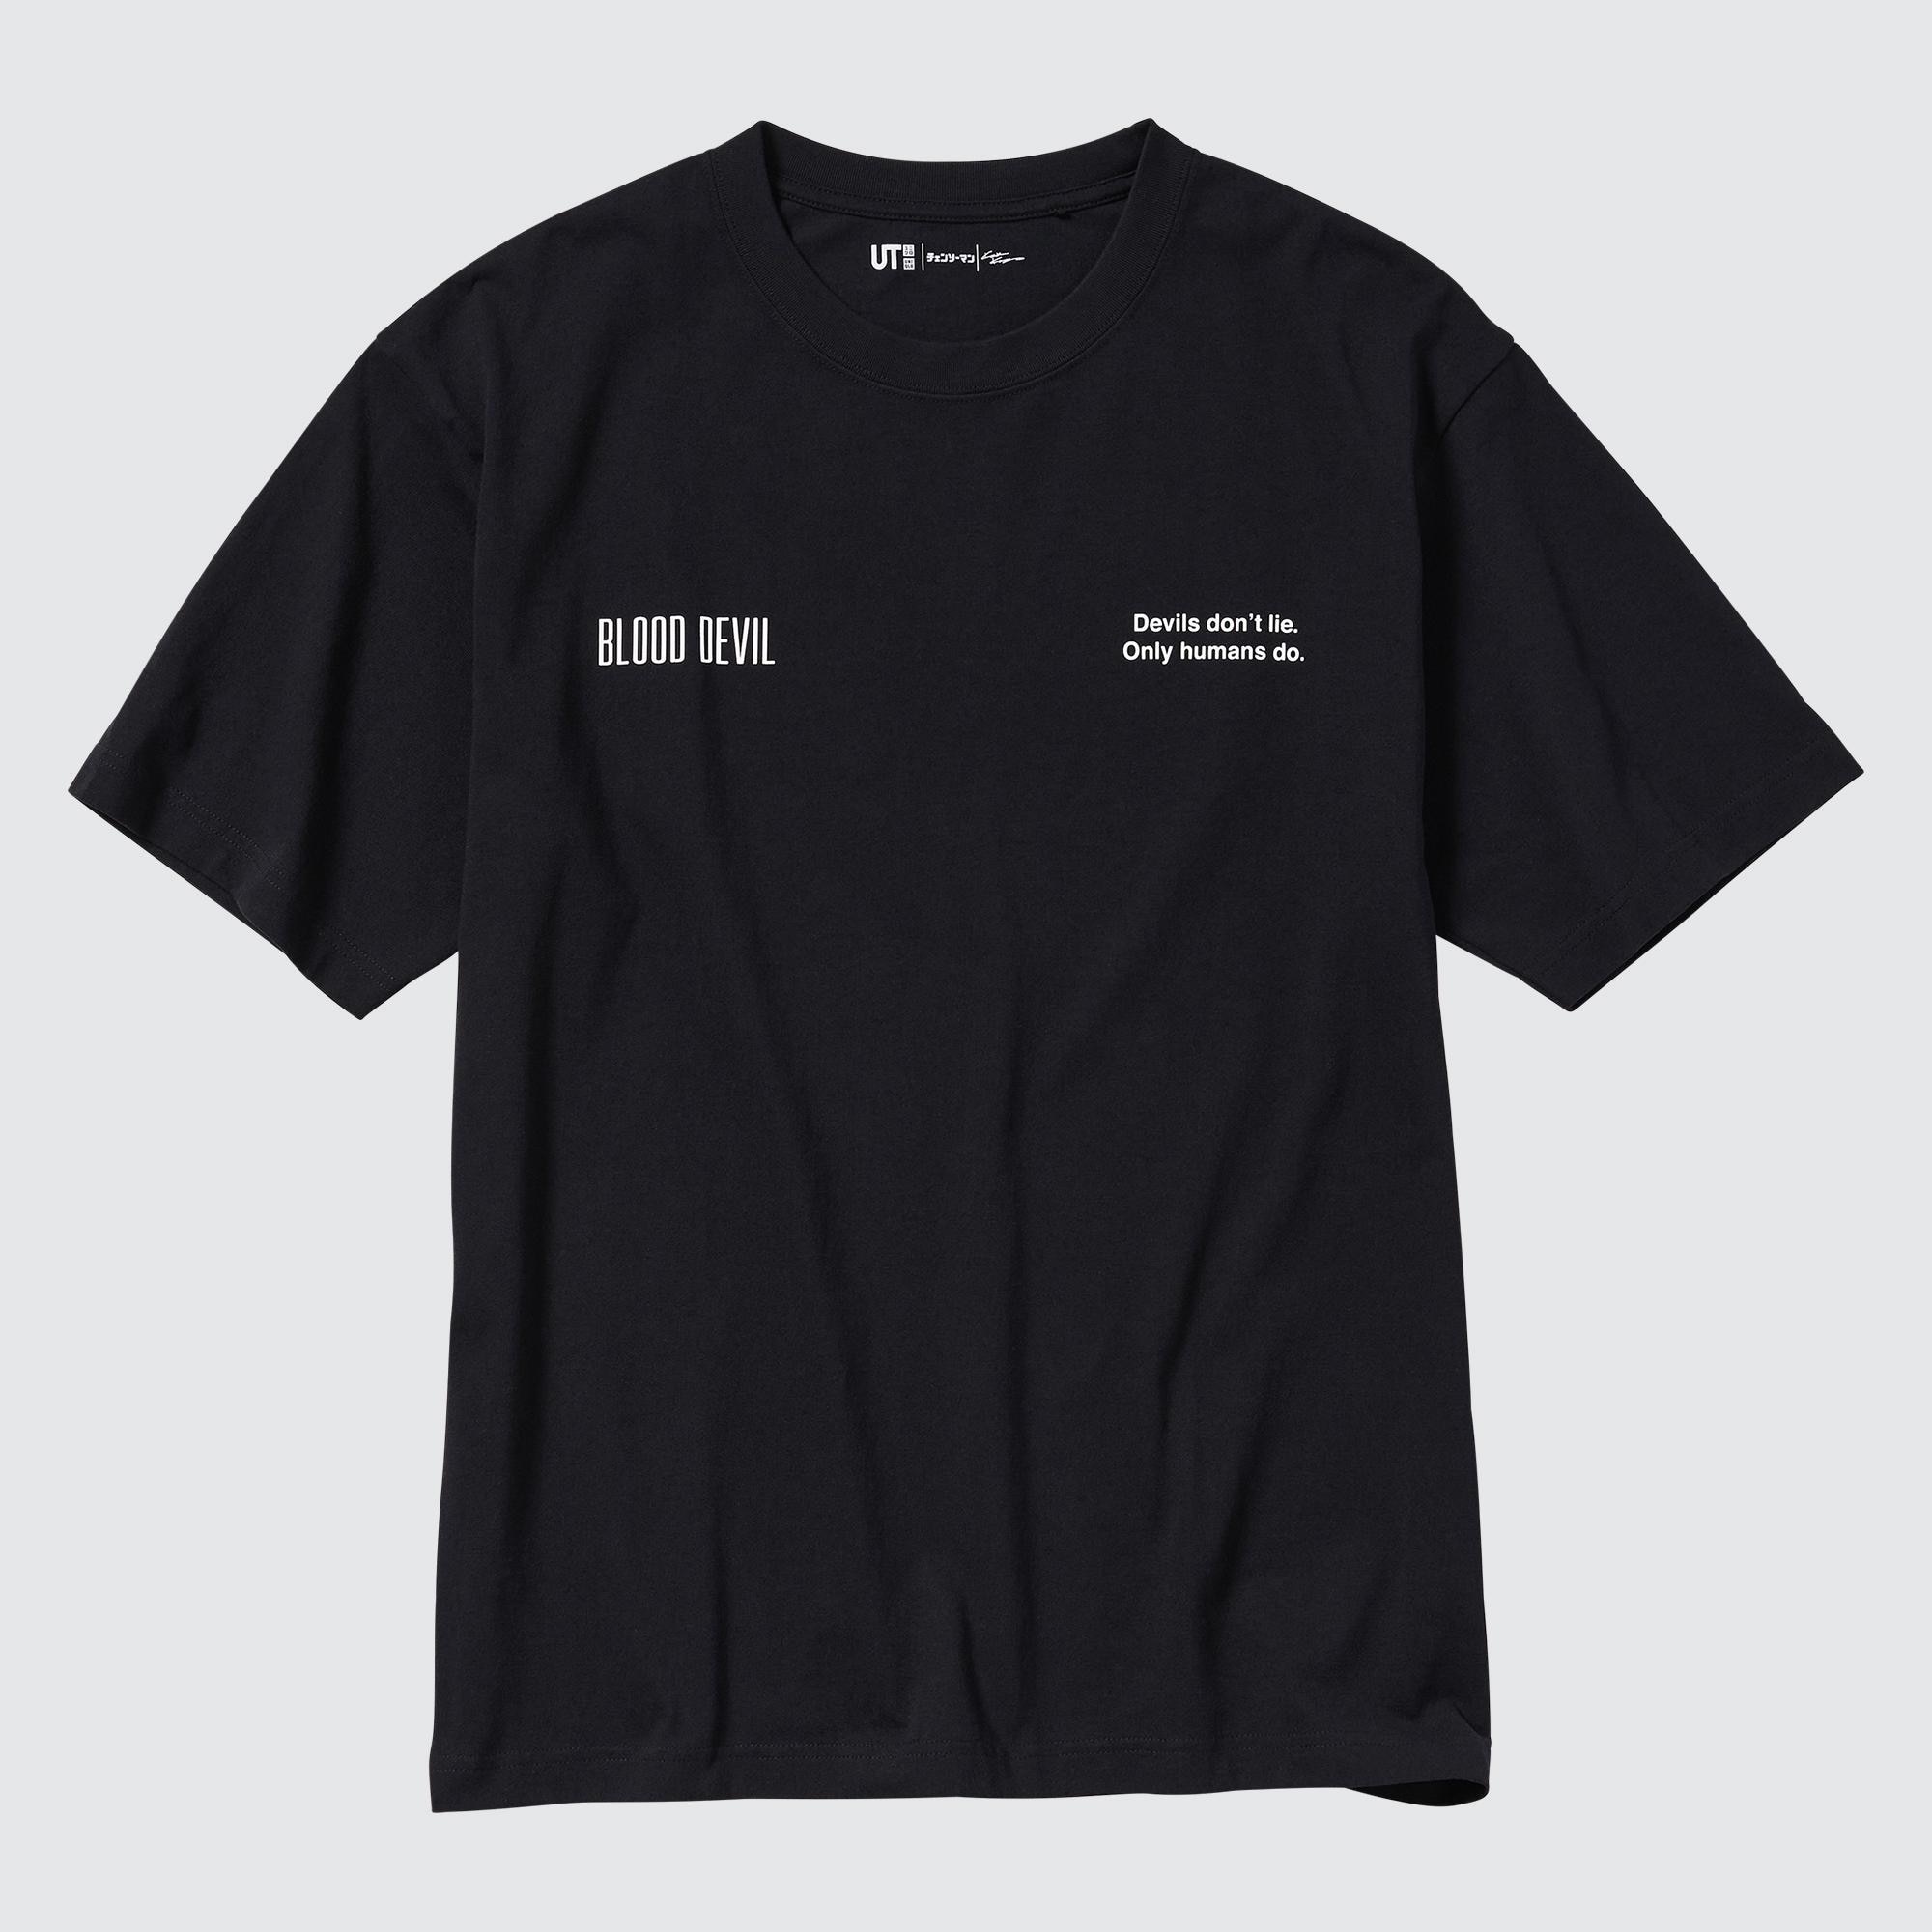 ロゴTシャツの関連商品 | ユニクロ